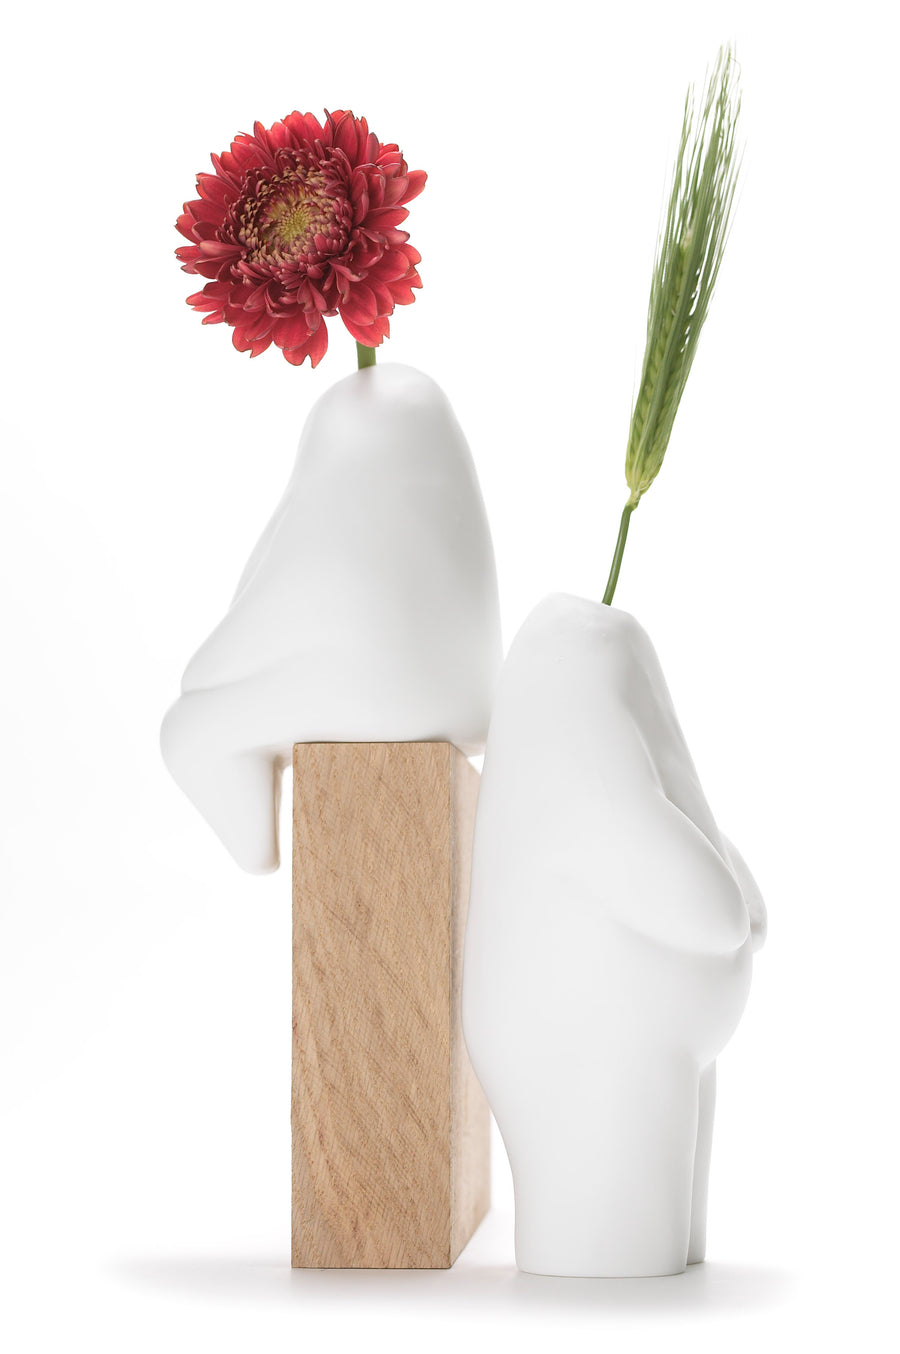 Flowerman single flower vase